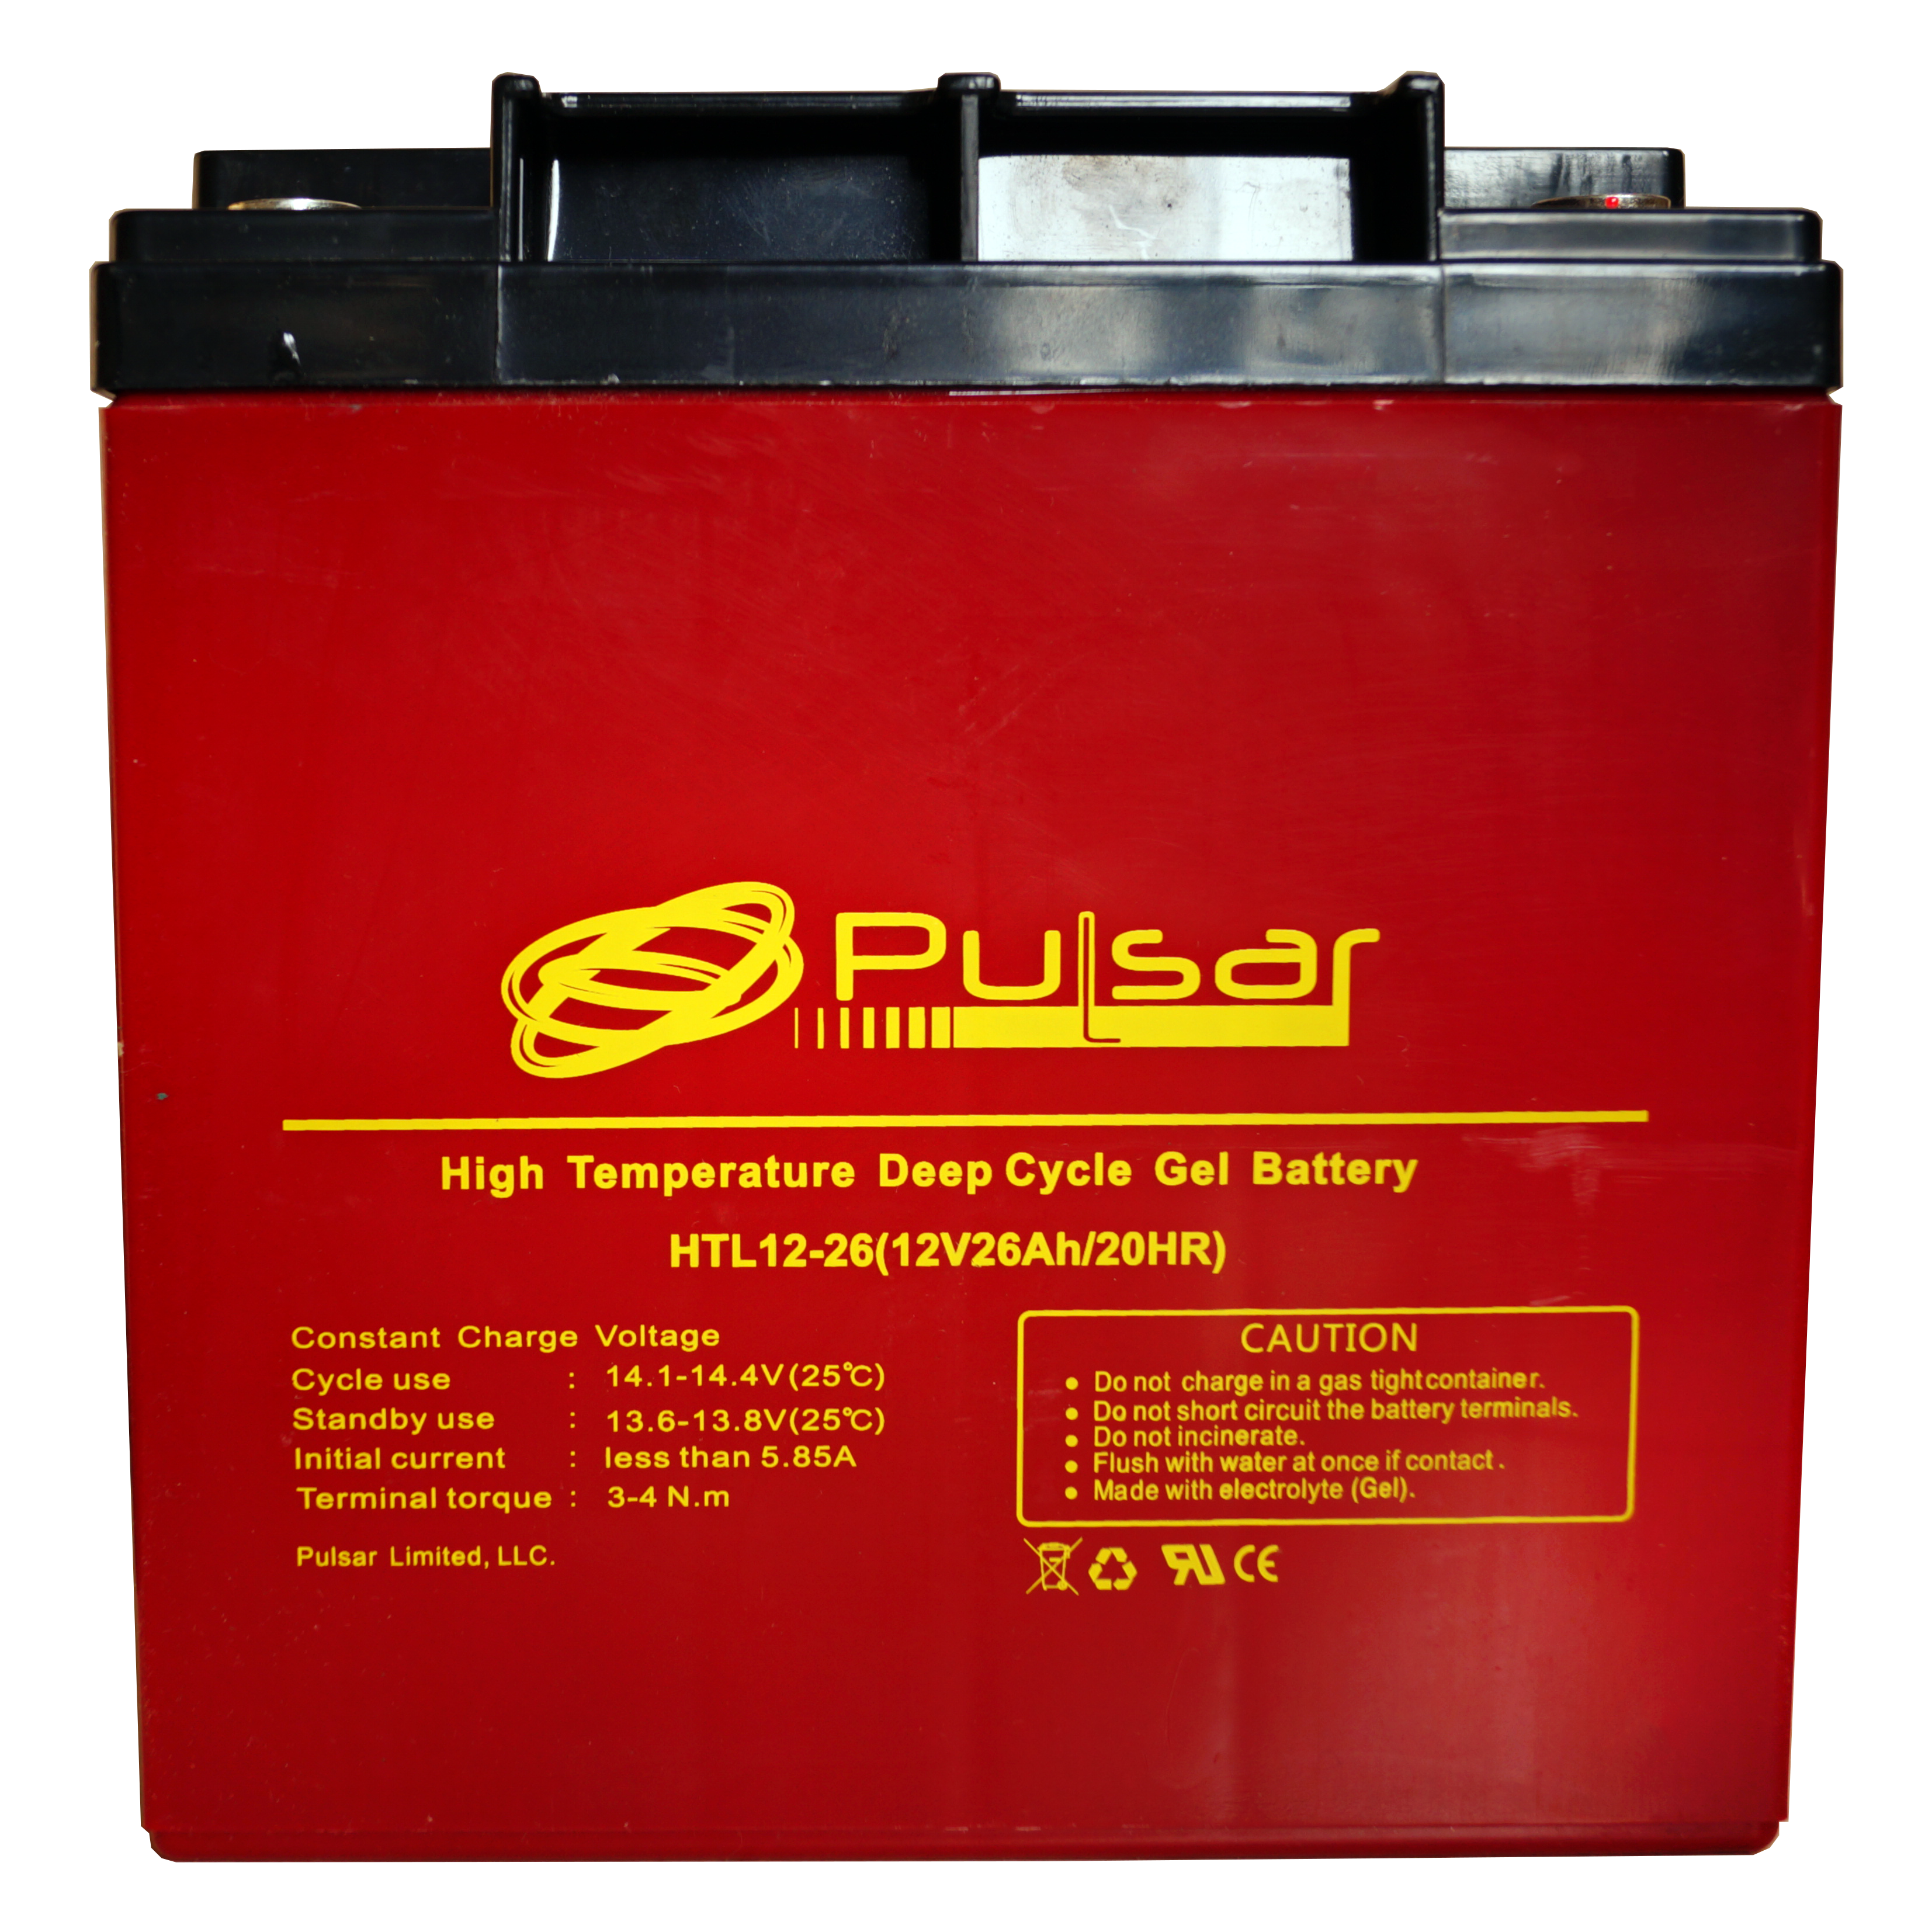 Аккумуляторная батарея Pulsar HTL12-26 ᐉ купить артикул 0-170082 в Киеве - супер-цена на запчасть – от 2020 грн. – интернет-магазин Strument (Украина)